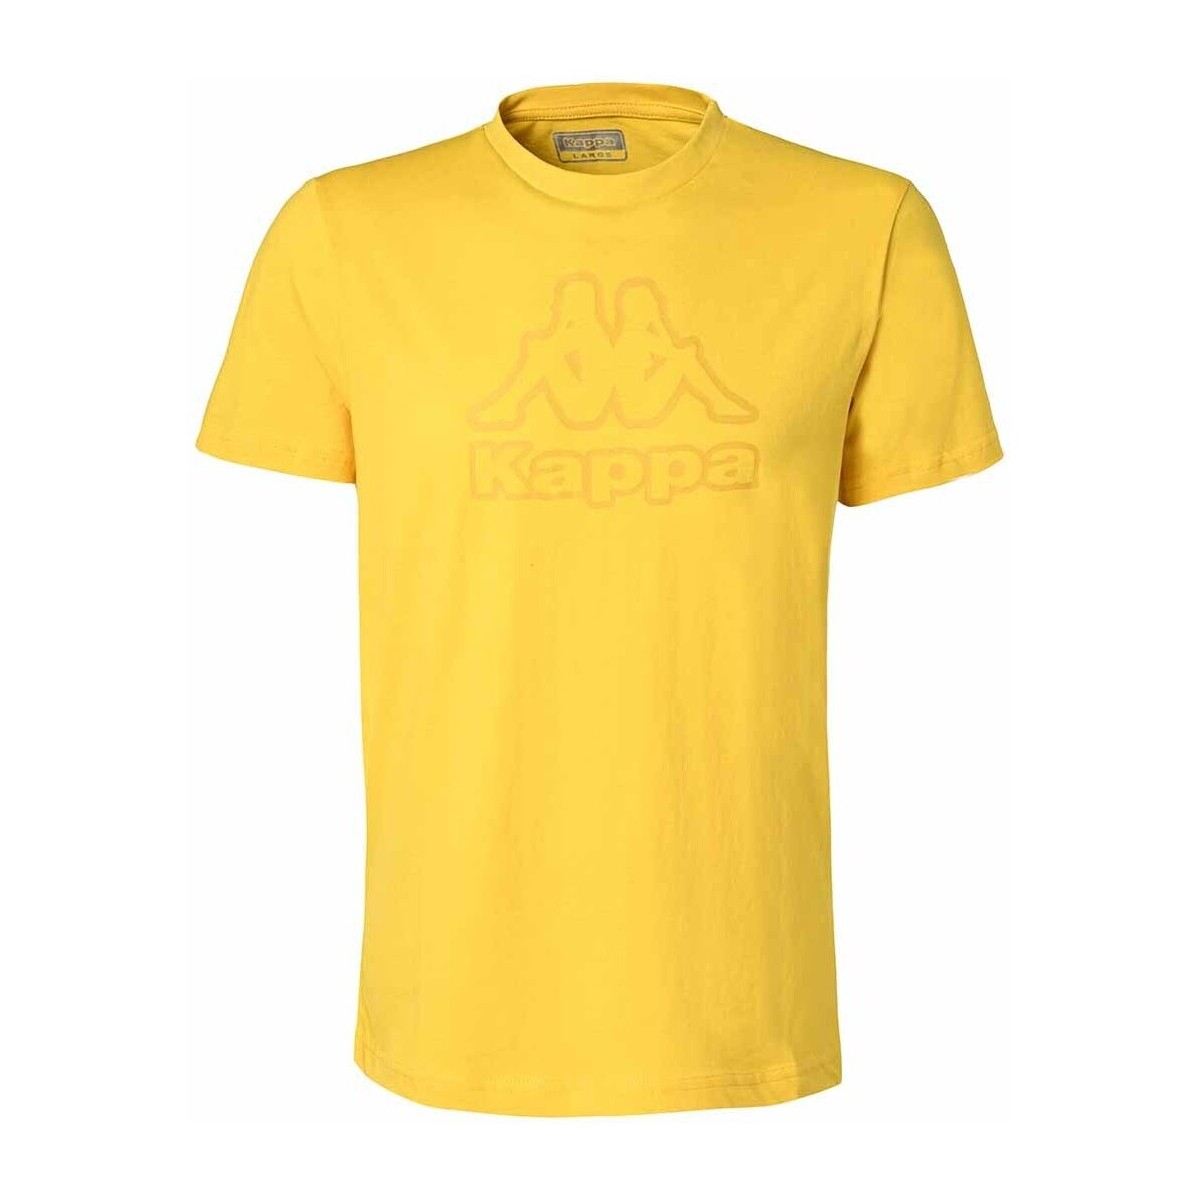 Kappa Jaune T-shirt Cremy S6iztb1G